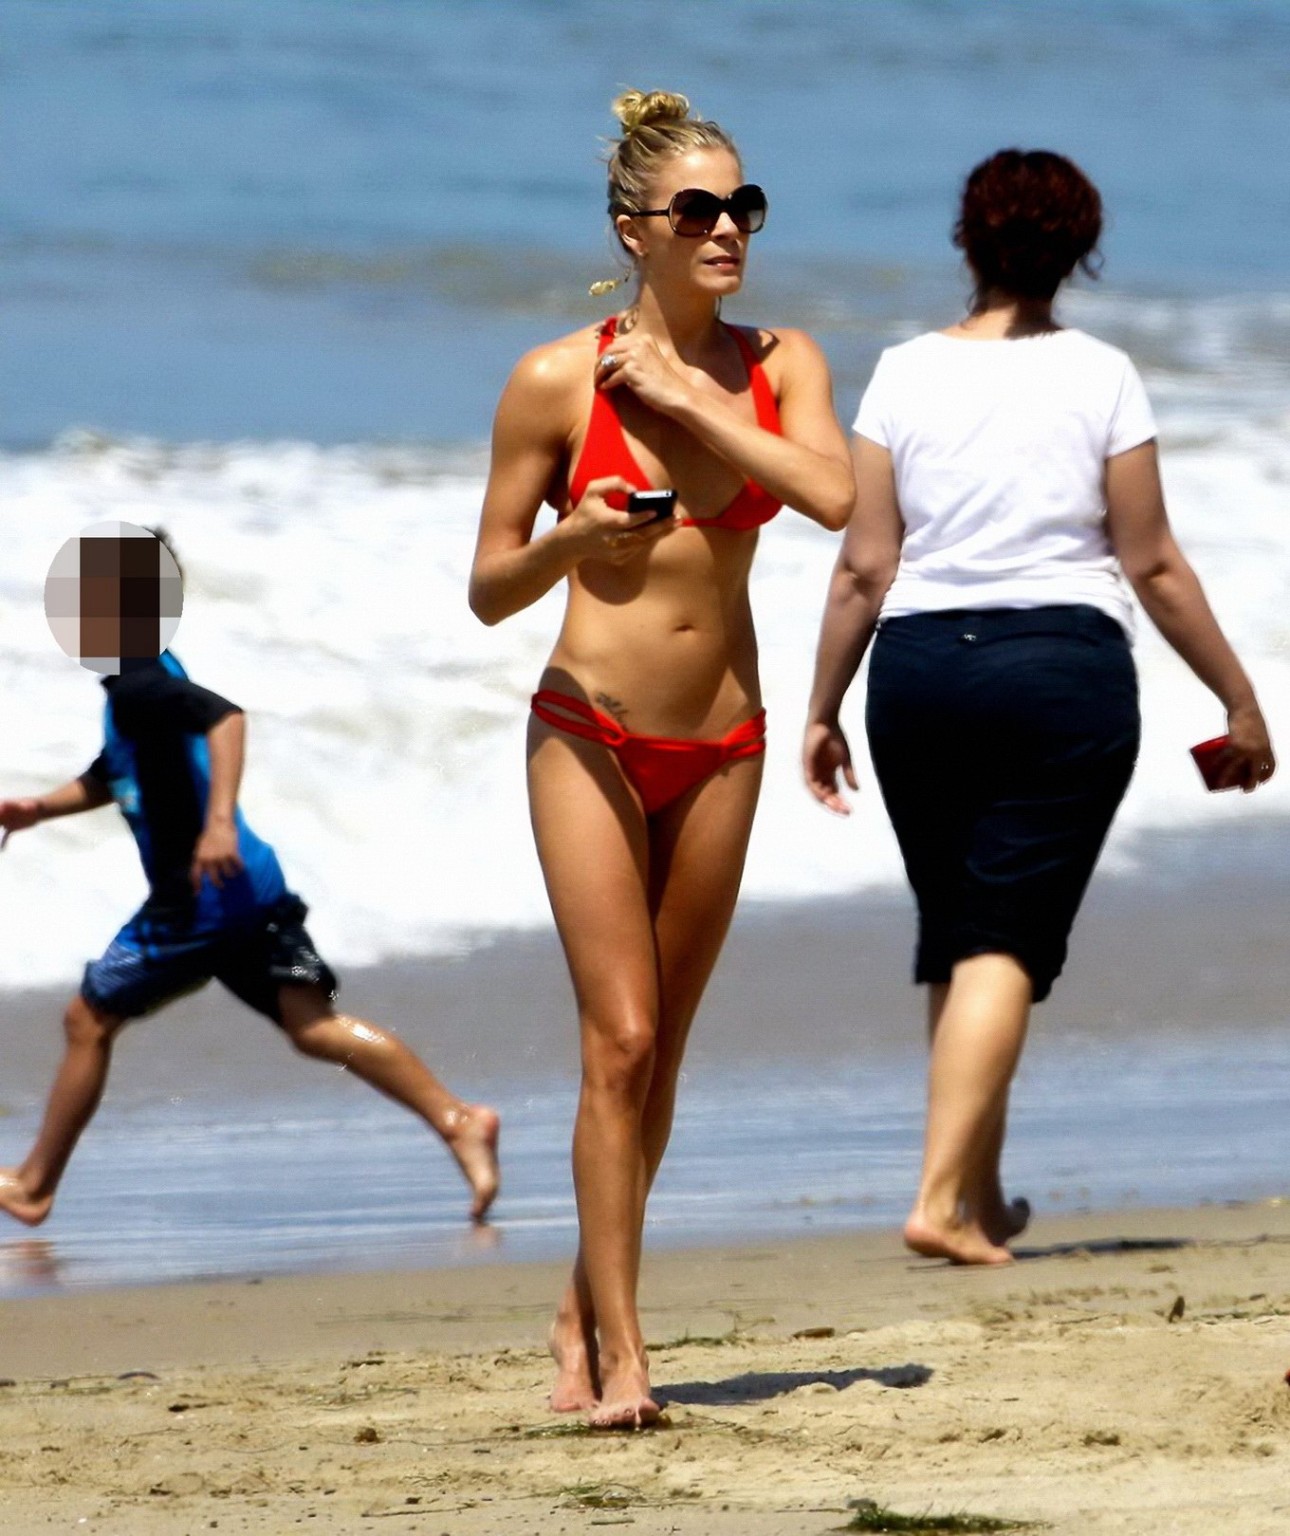 Leann rimes con un escaso bikini rojo en la playa de malibu
 #75297517